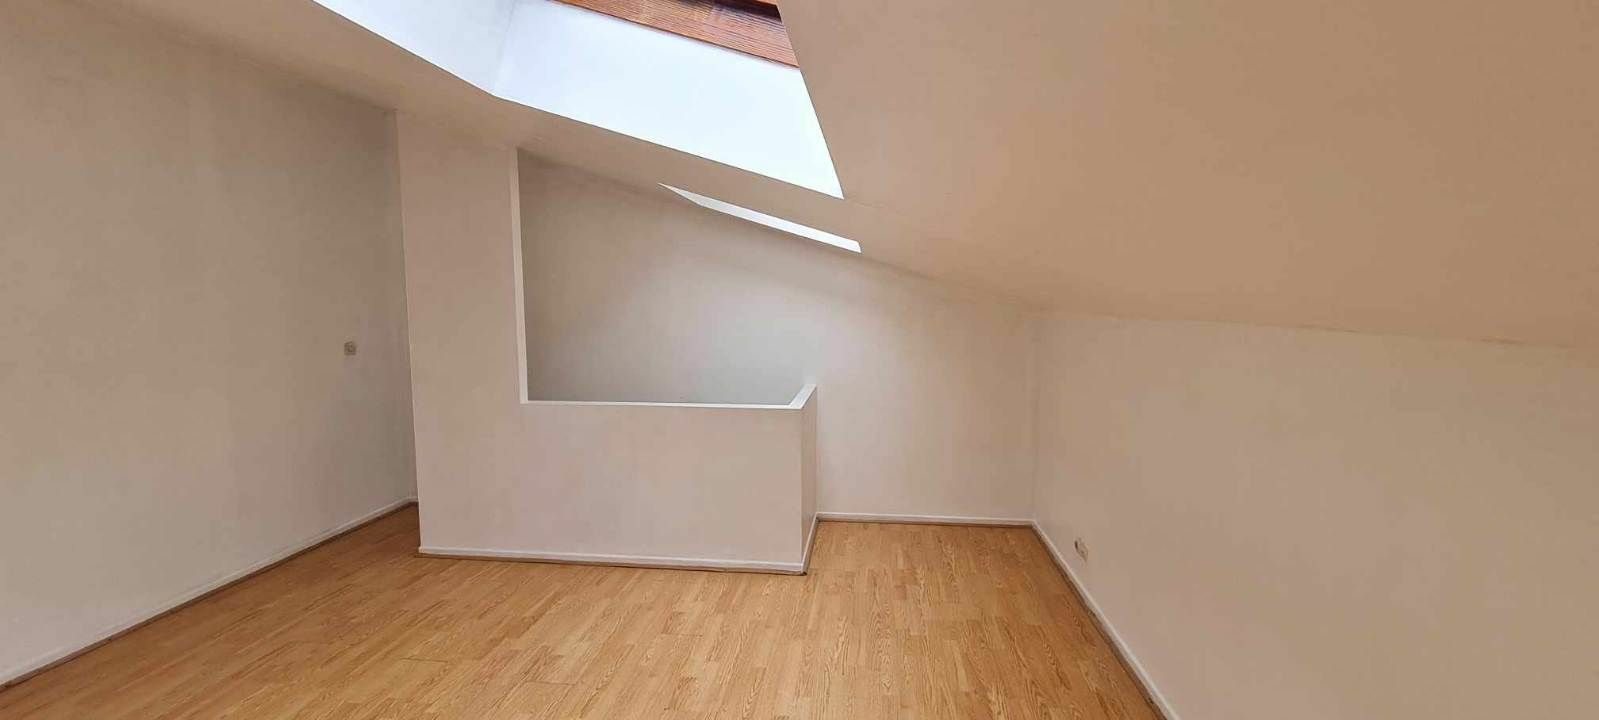 Appartement à vendre 2 35.65m2 à Reims vignette-6